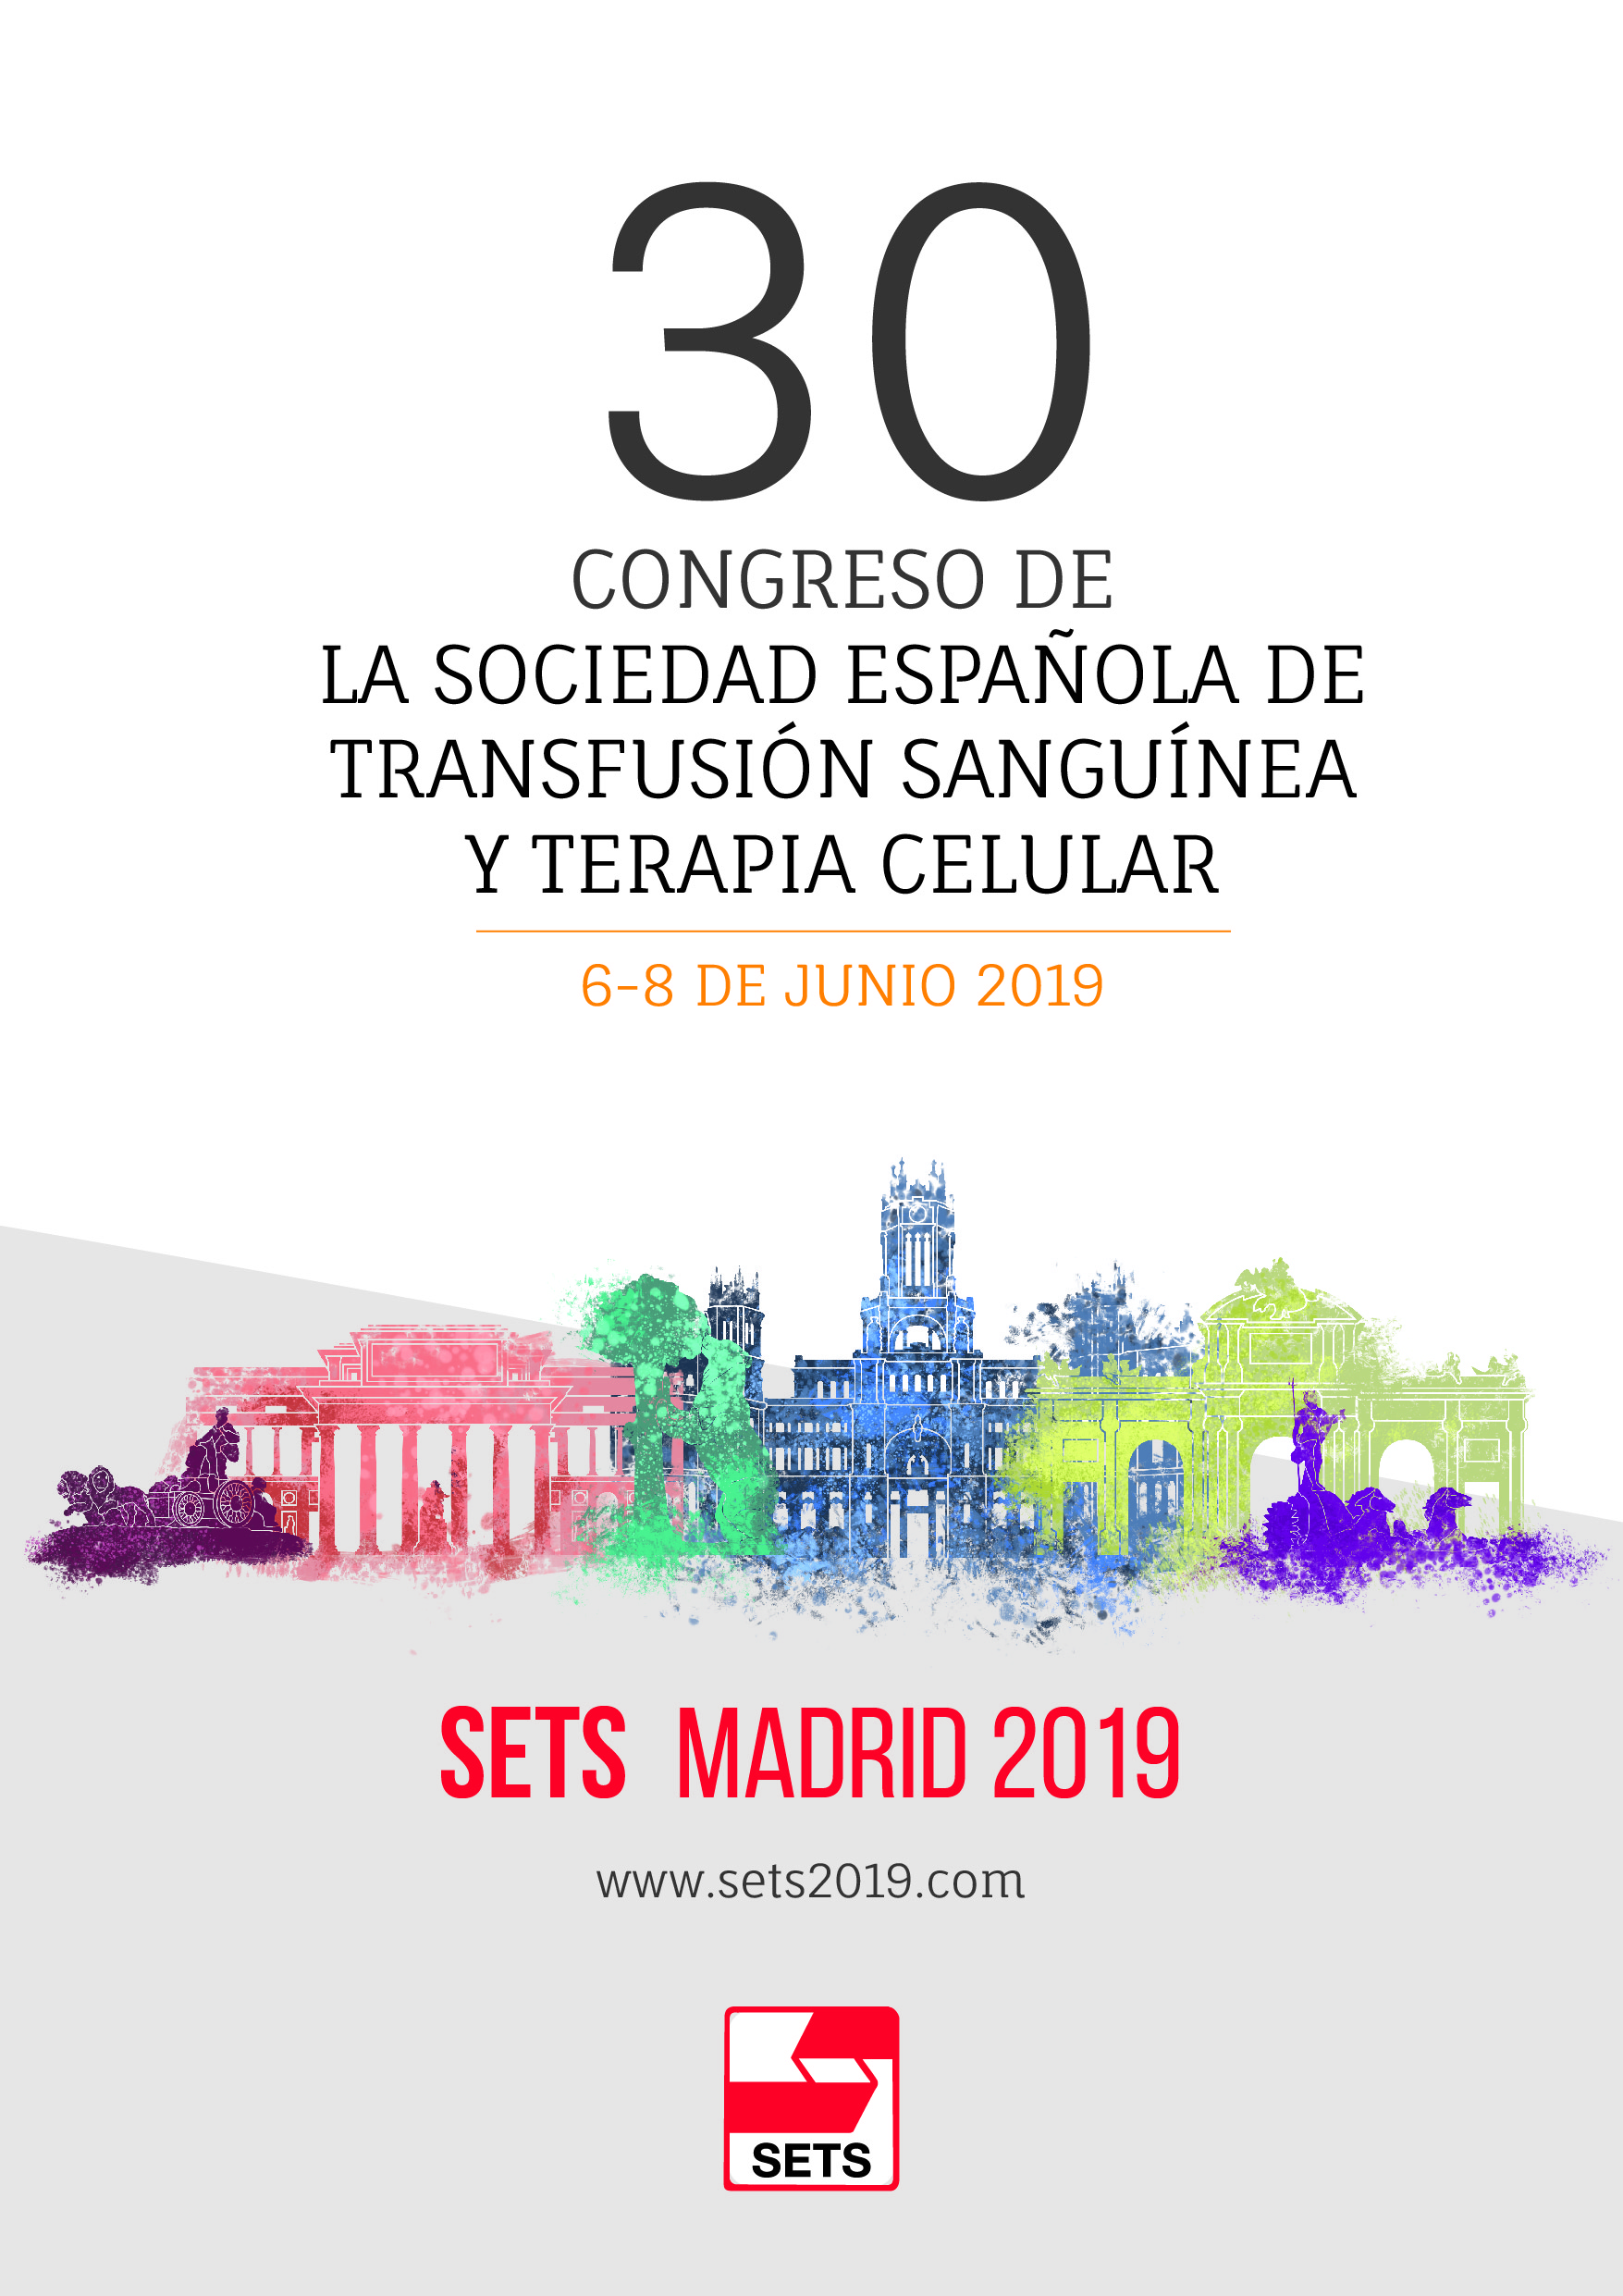 30 Congreso de la Sociedad Española de Transfusión Sanguínea y Terapia Celular